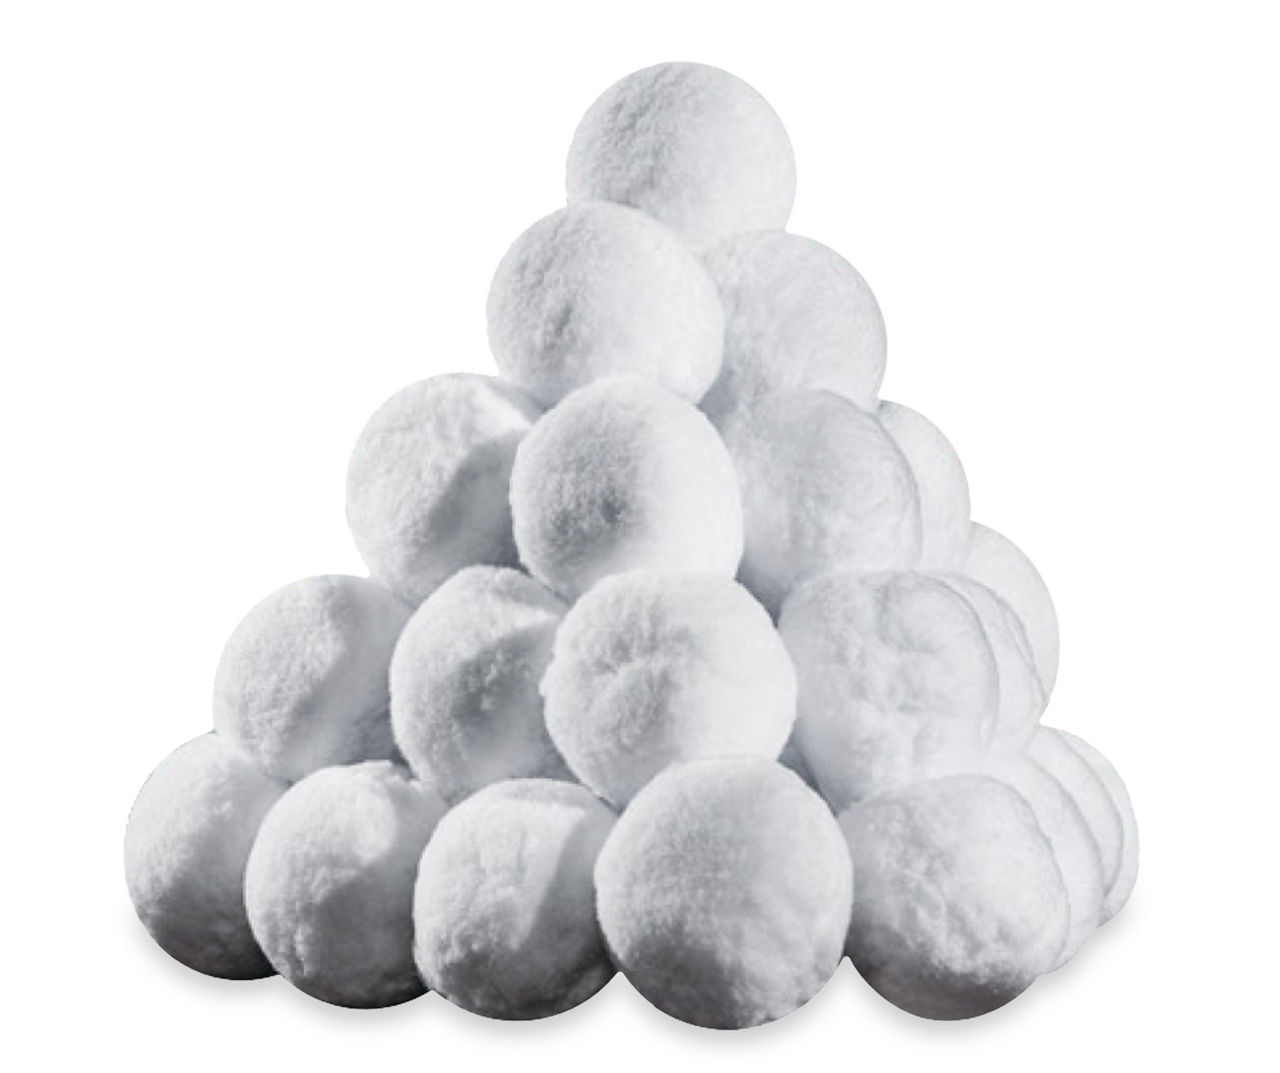 Indoor Snowballs For Kids, Indoor Snowball Fight Set, Artificial